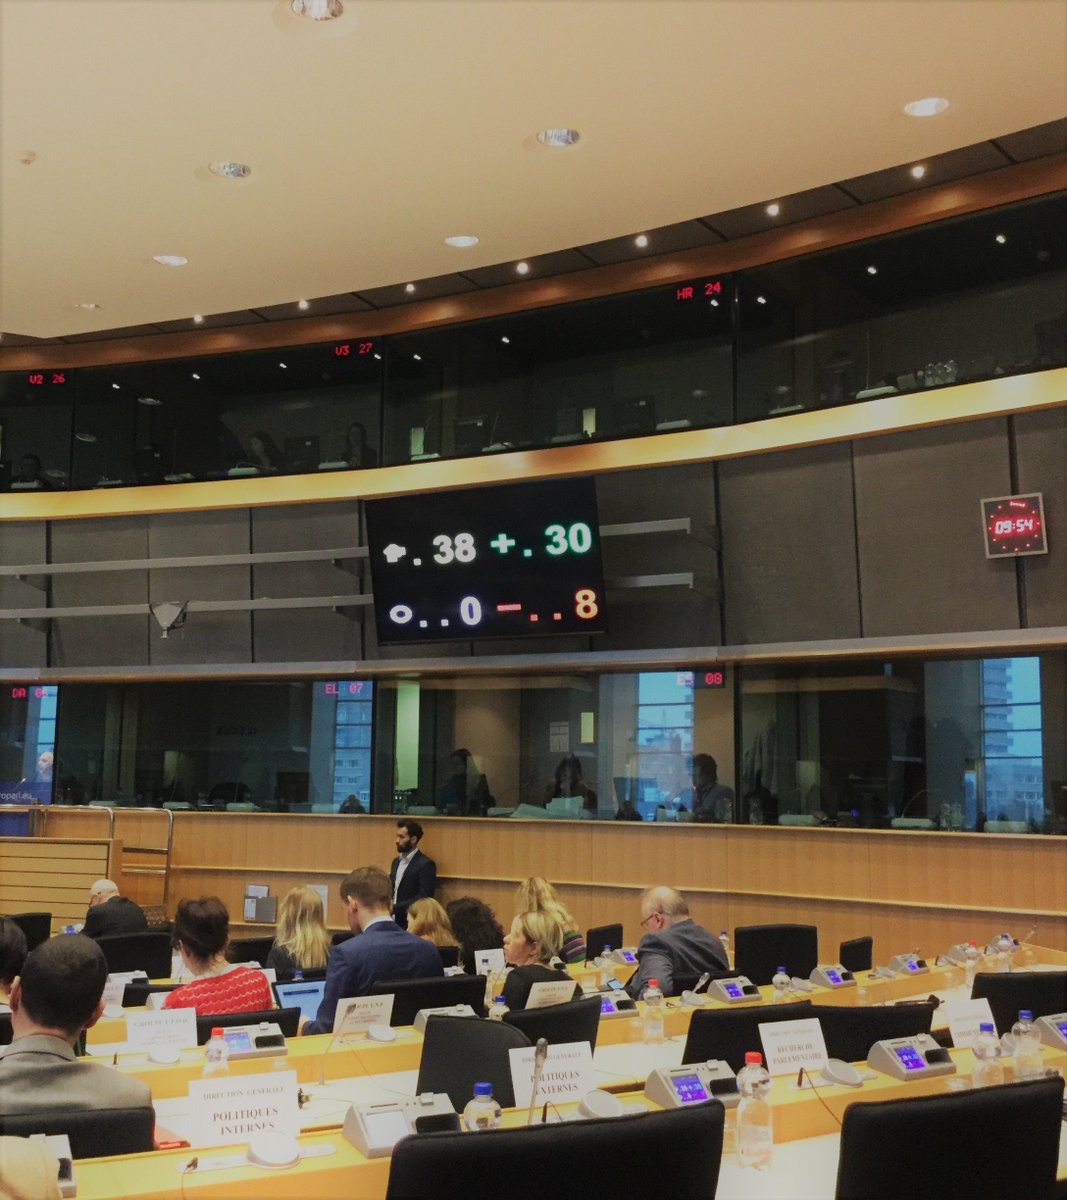 Approvato in commissione Mercato interno il programma sul #MercatoUnico, di cui sono relatore!
✔️+3 miliardi per il sostegno alle #PMI
✔️+0,5 mld per la difesa dalla #concorrenzasleale dei prodotti extra-Ue
✔️+1,7 mld per garantire la #sicurezza alimentare dei cittadini europei